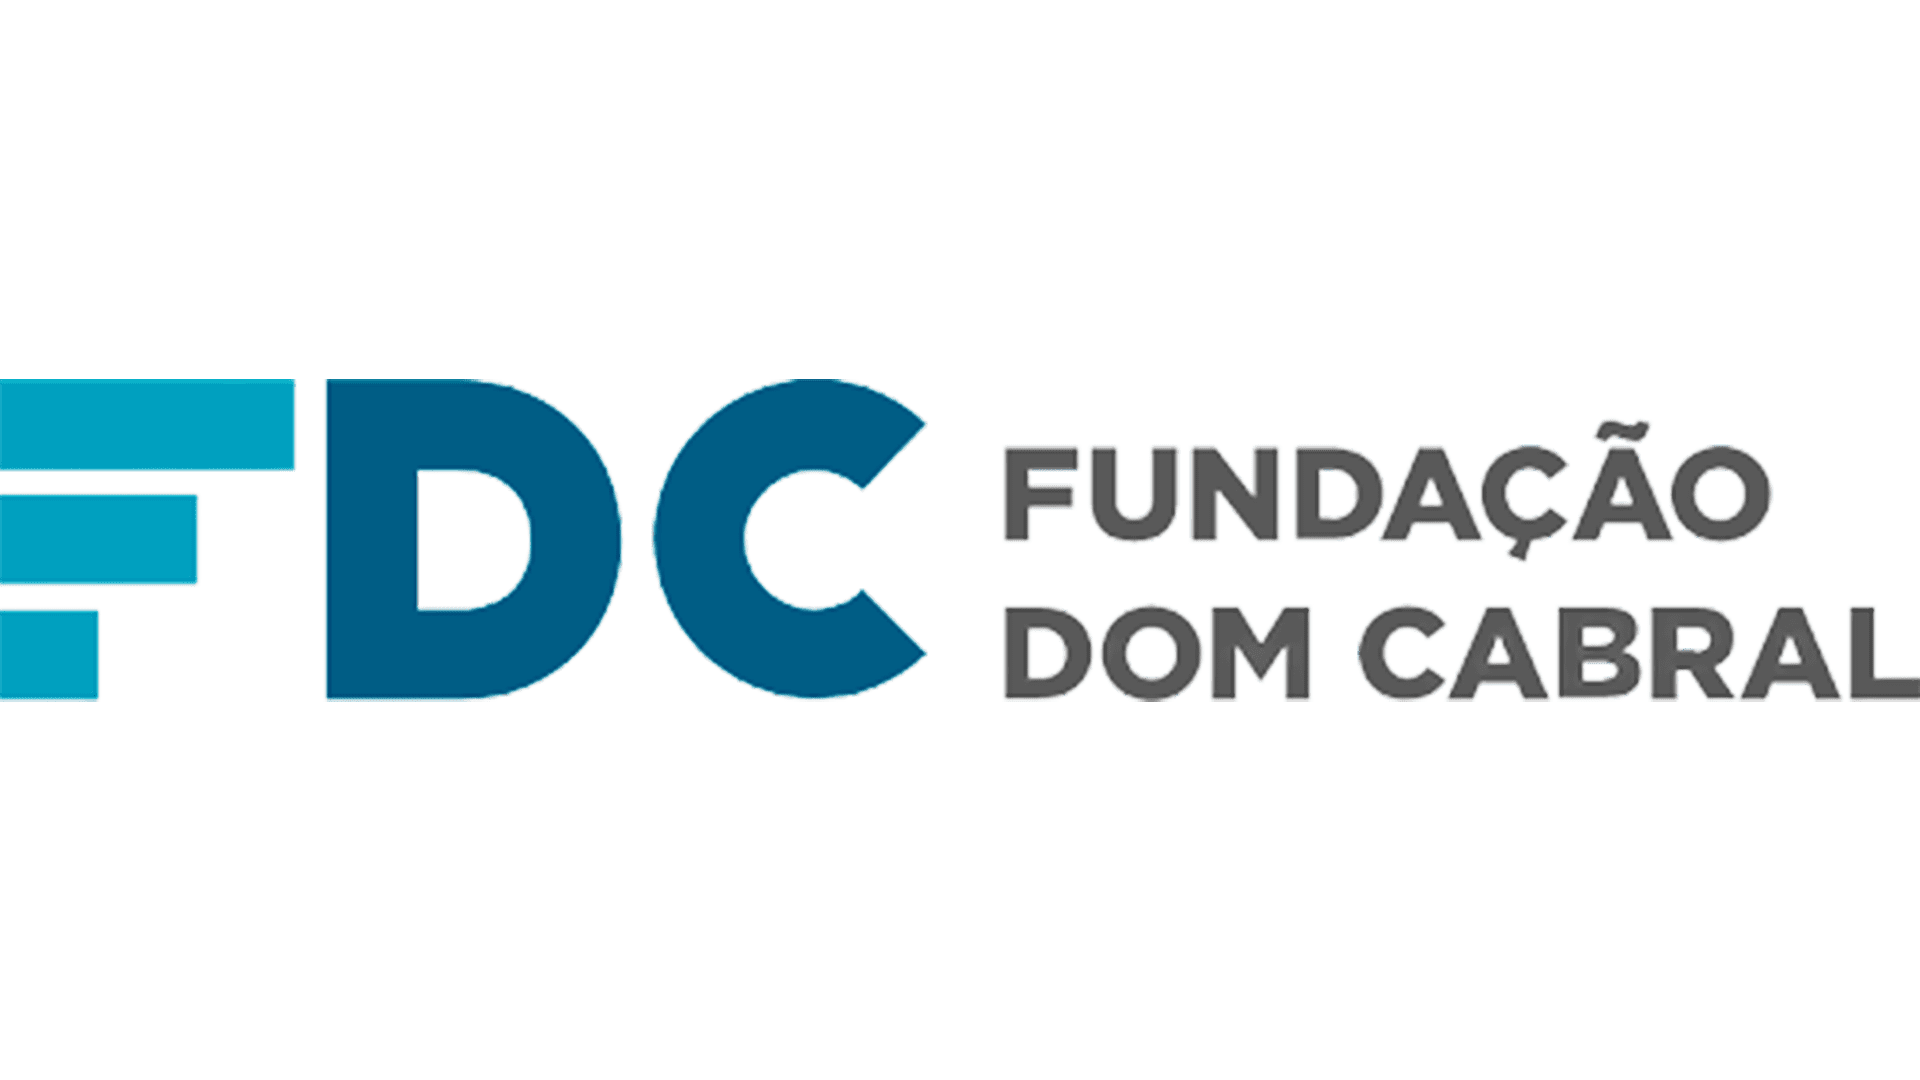 Fundação Dom Cabral's logo